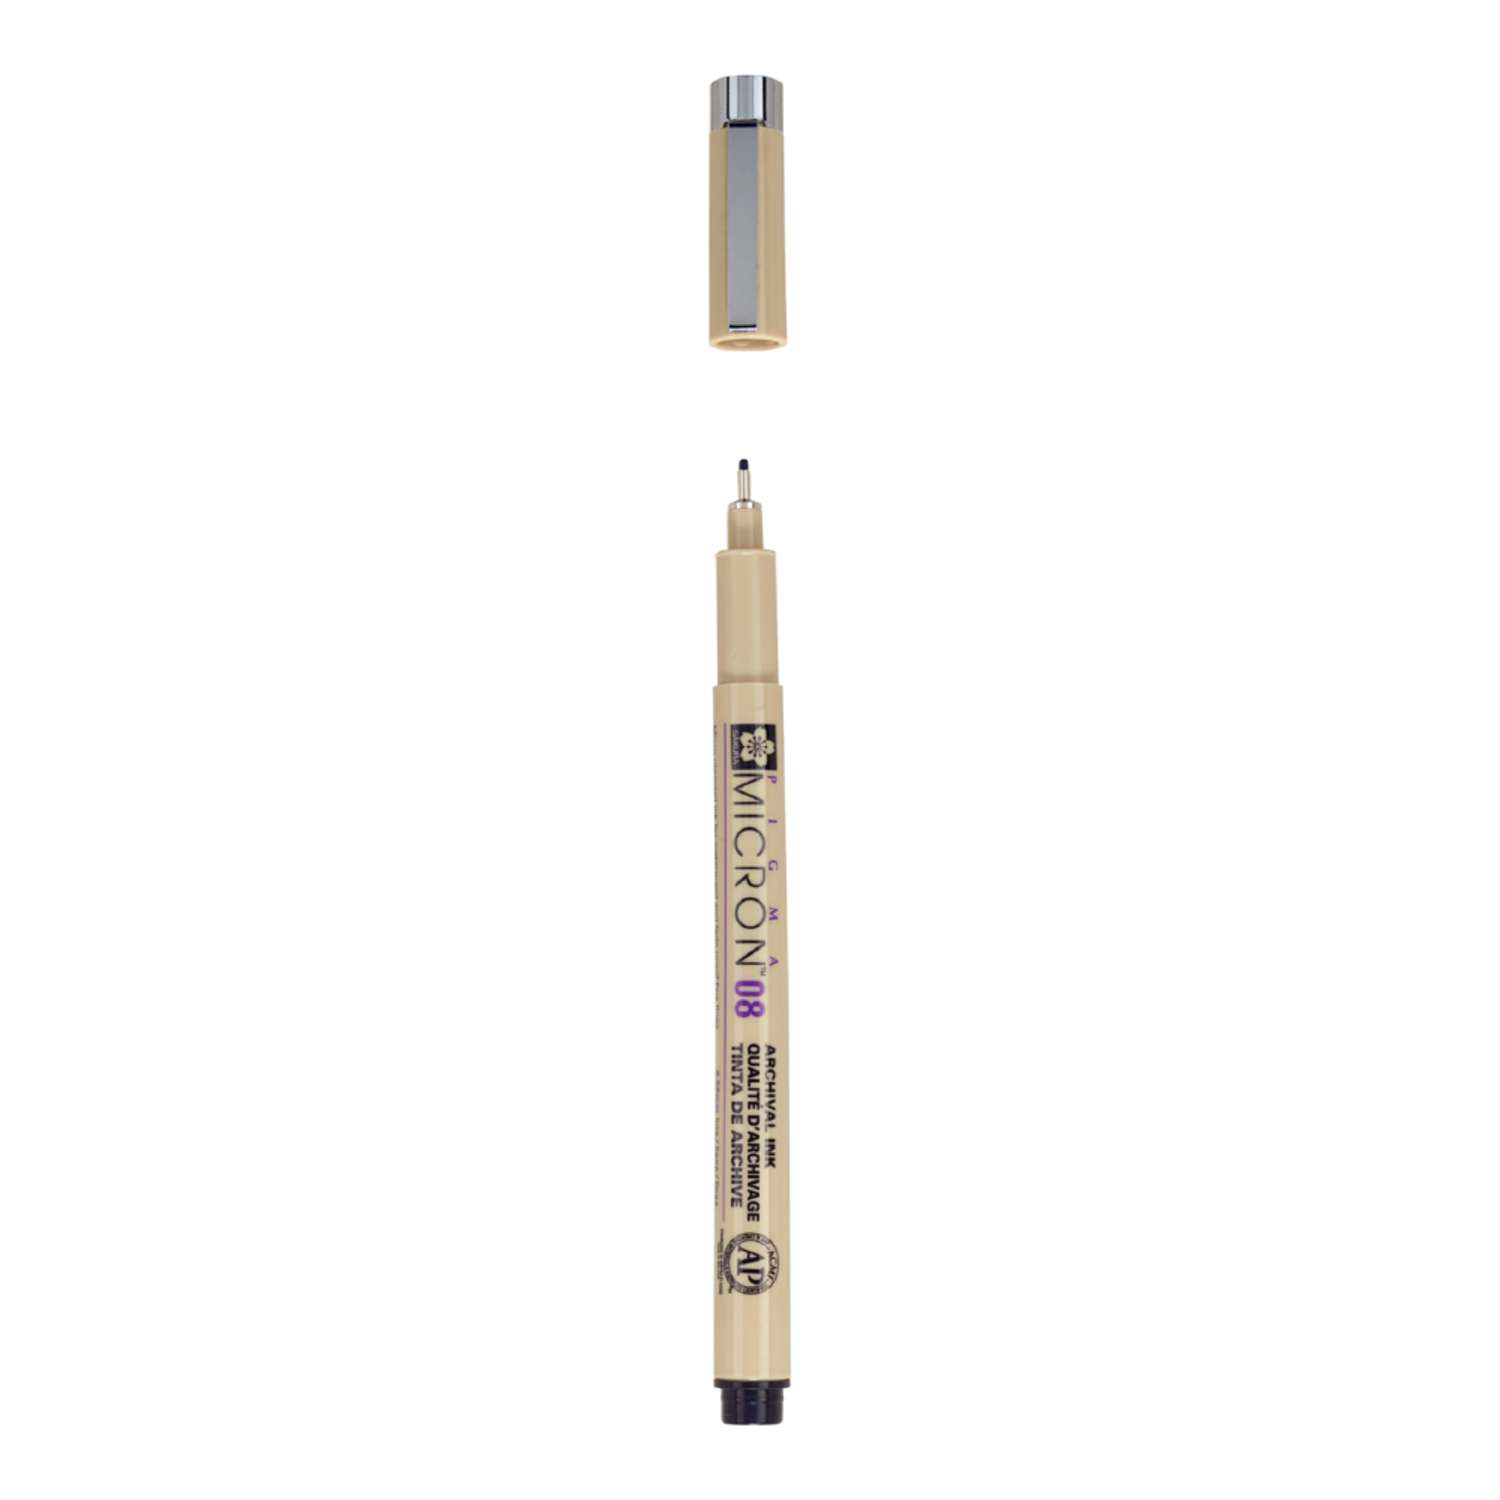 Ручка капиллярная Sakura Pigma Micron 08 цвет чернил: черный - фото 2